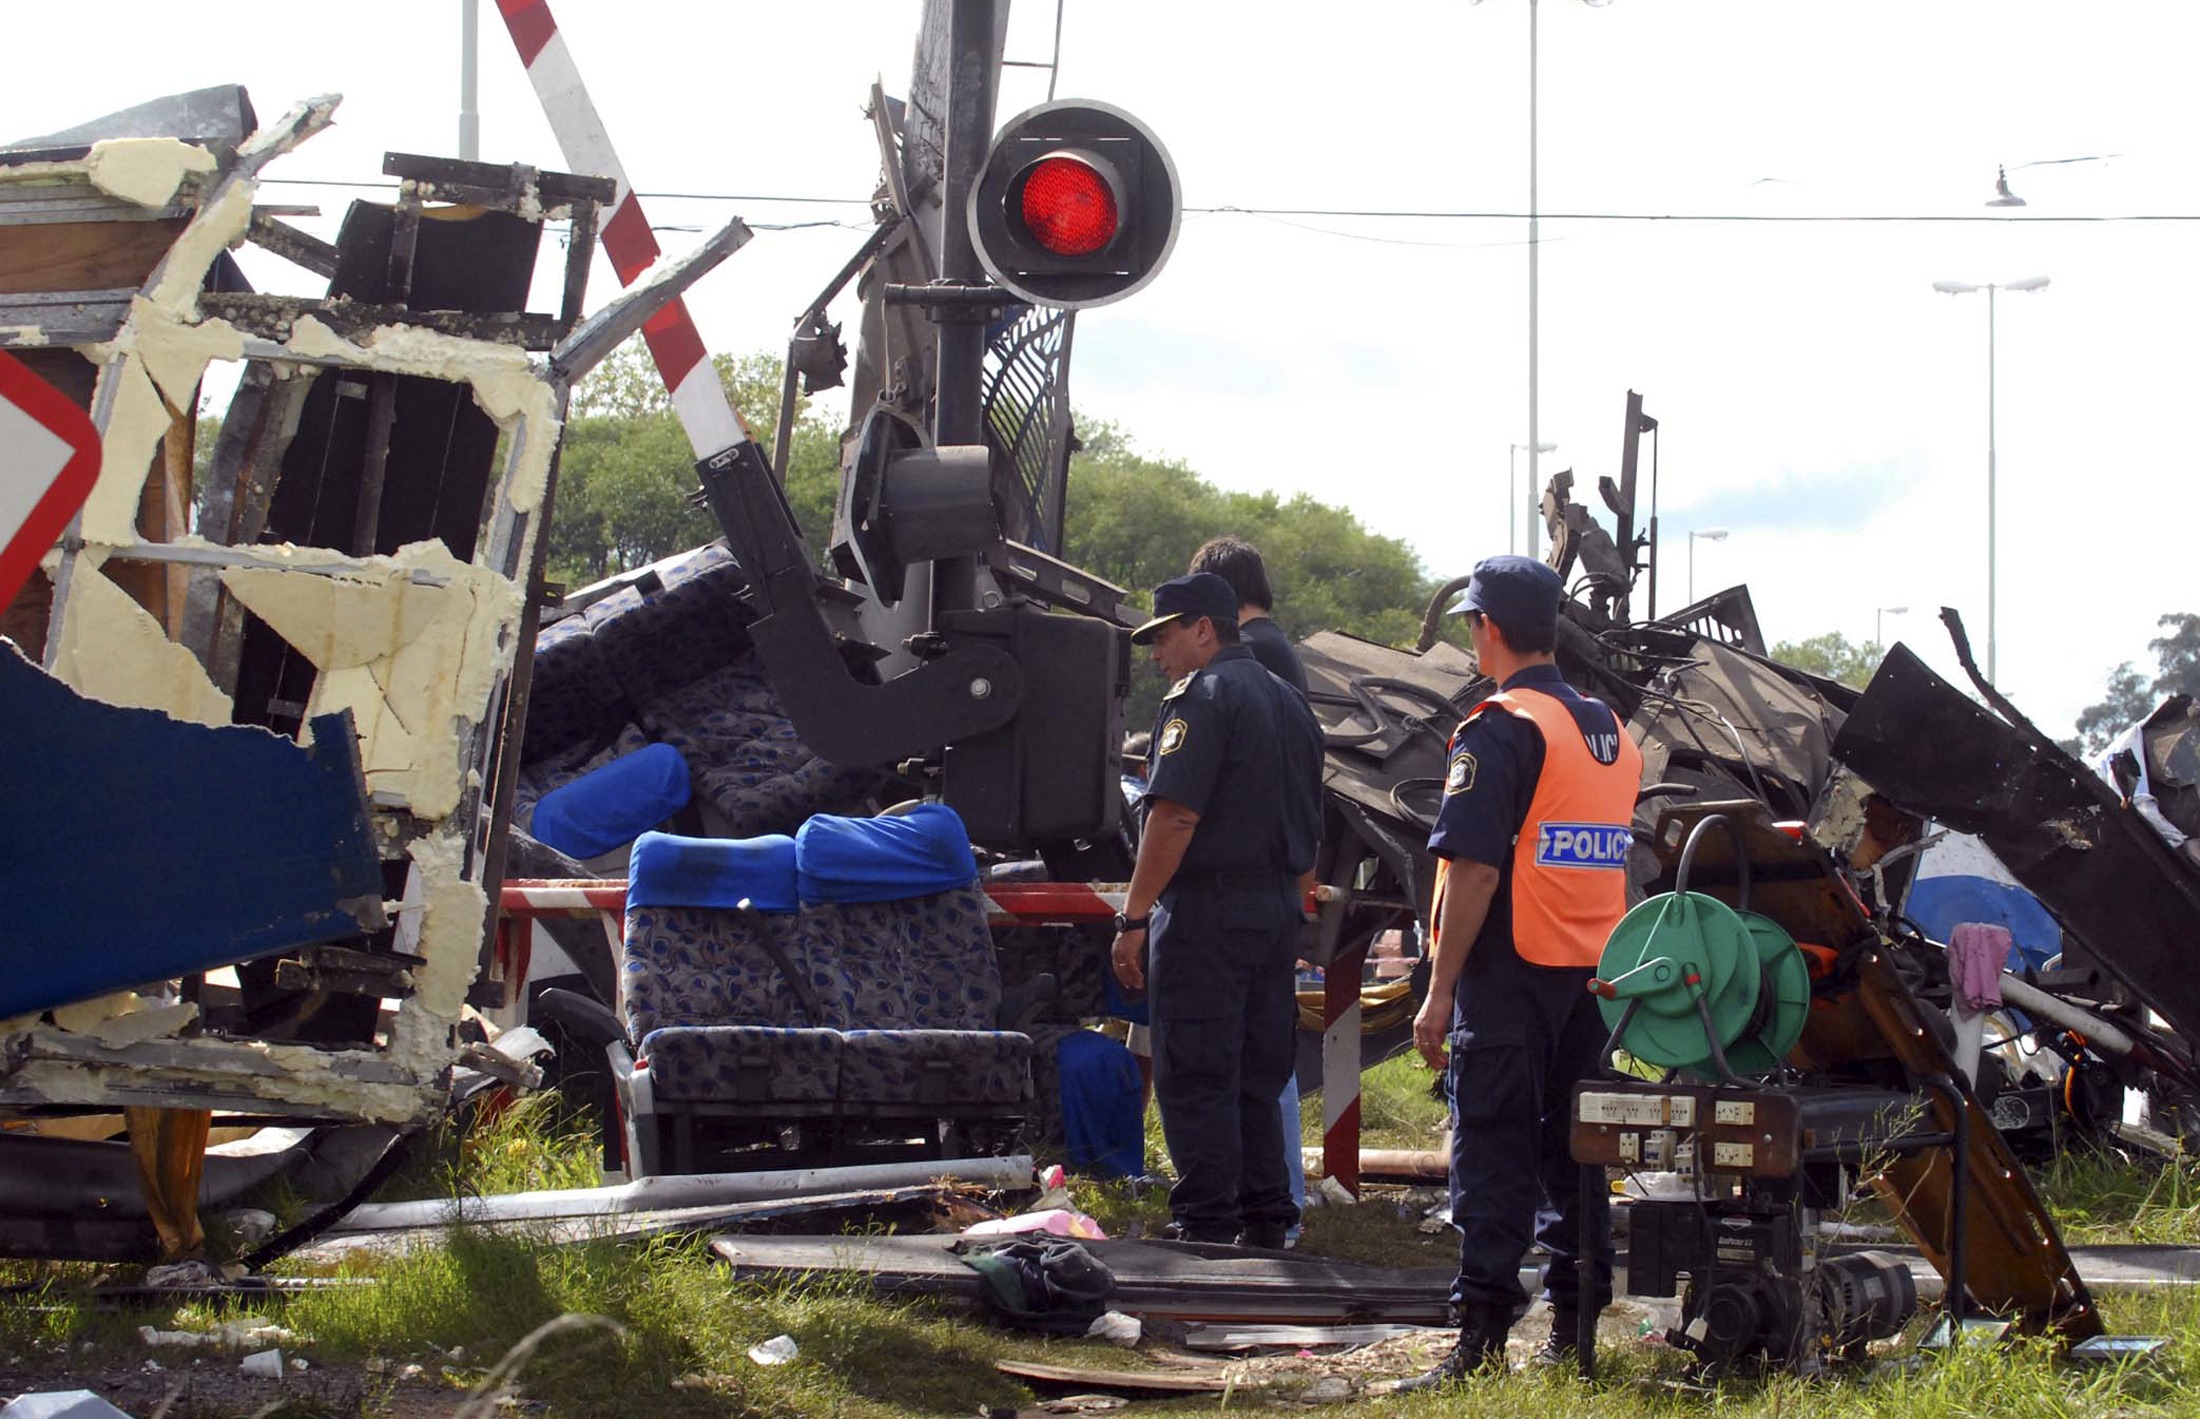 Train-bus crash kills 18 in Argentina